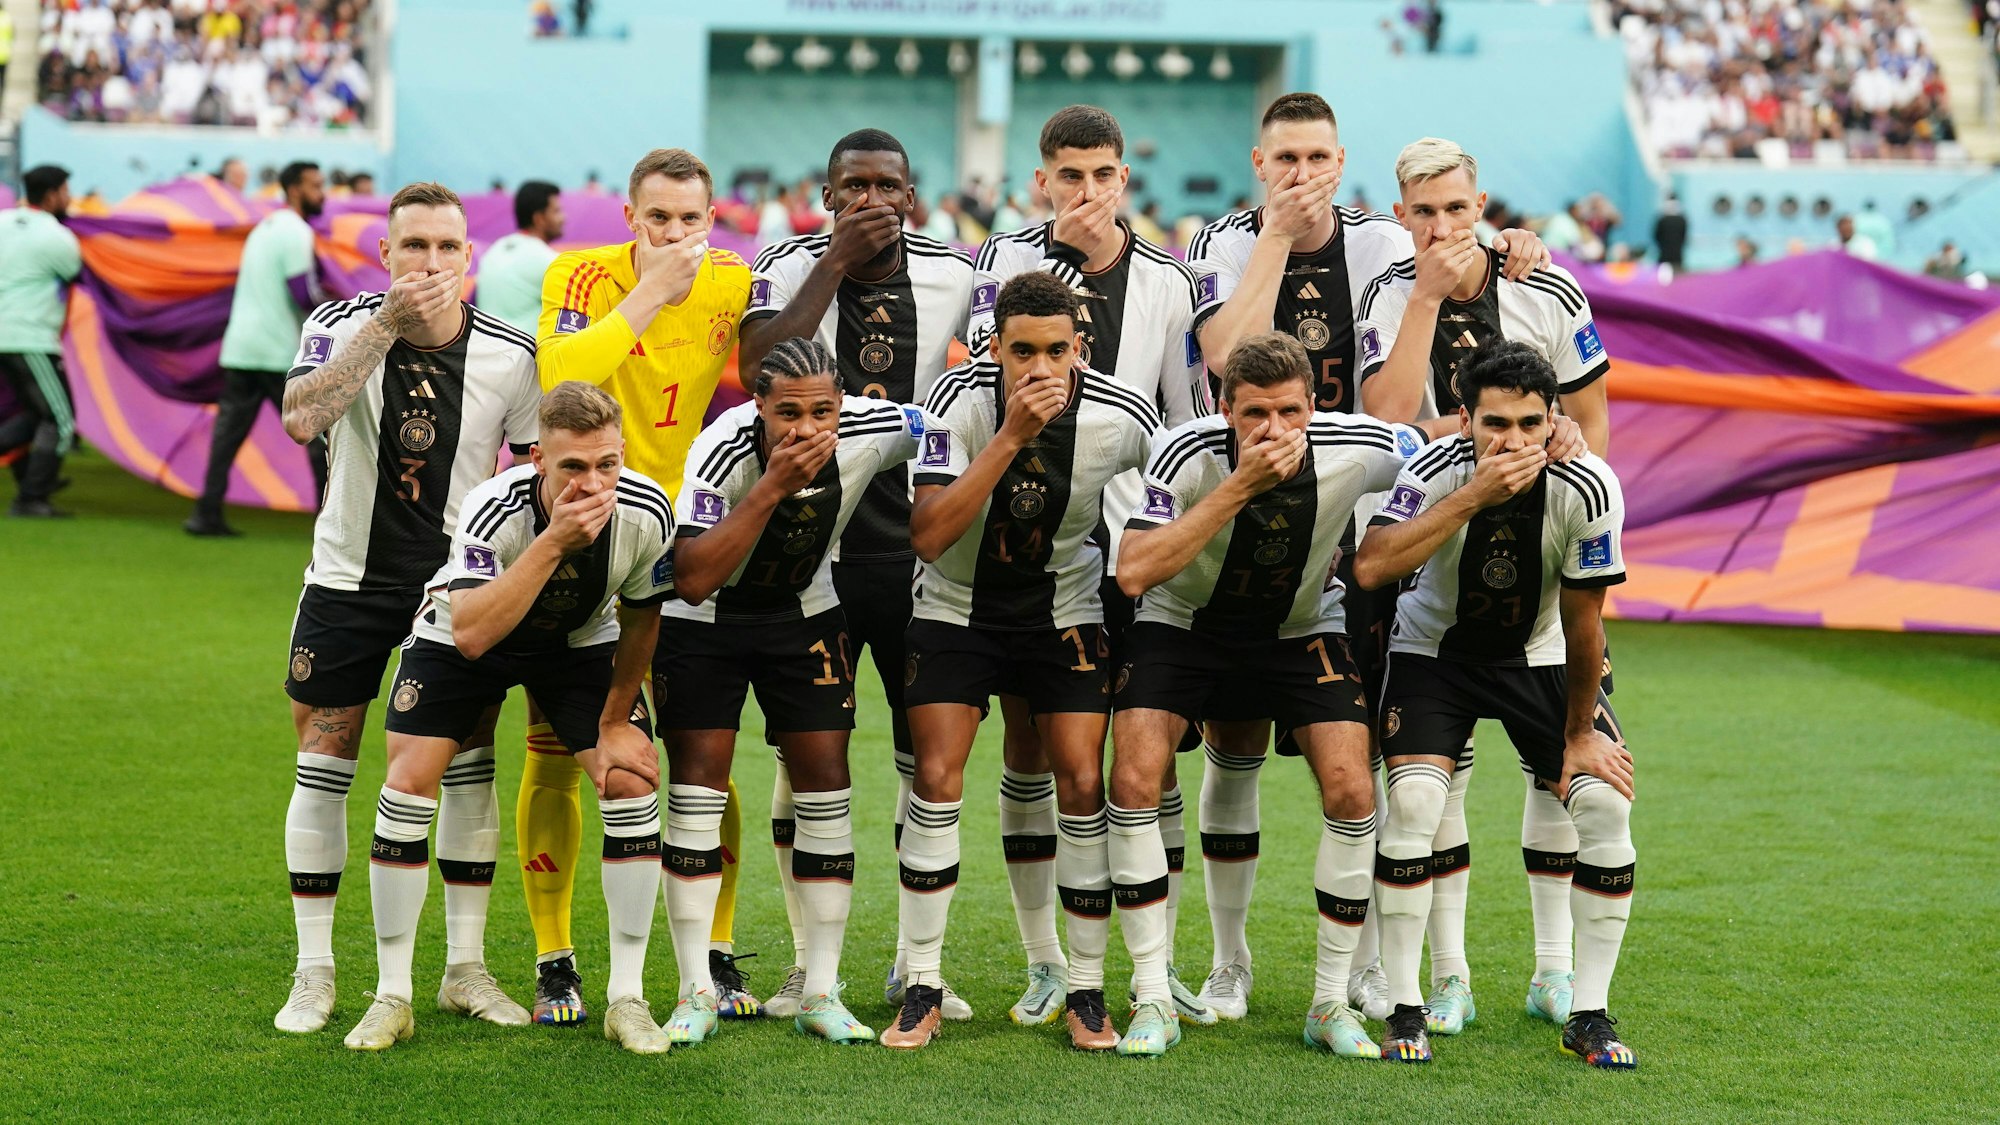 Spieler der deutschen Nationalmannschaft halten sich beim Mannschaftsfoto den Mund zu. Es soll ein Protest gegen die Fifa sein.